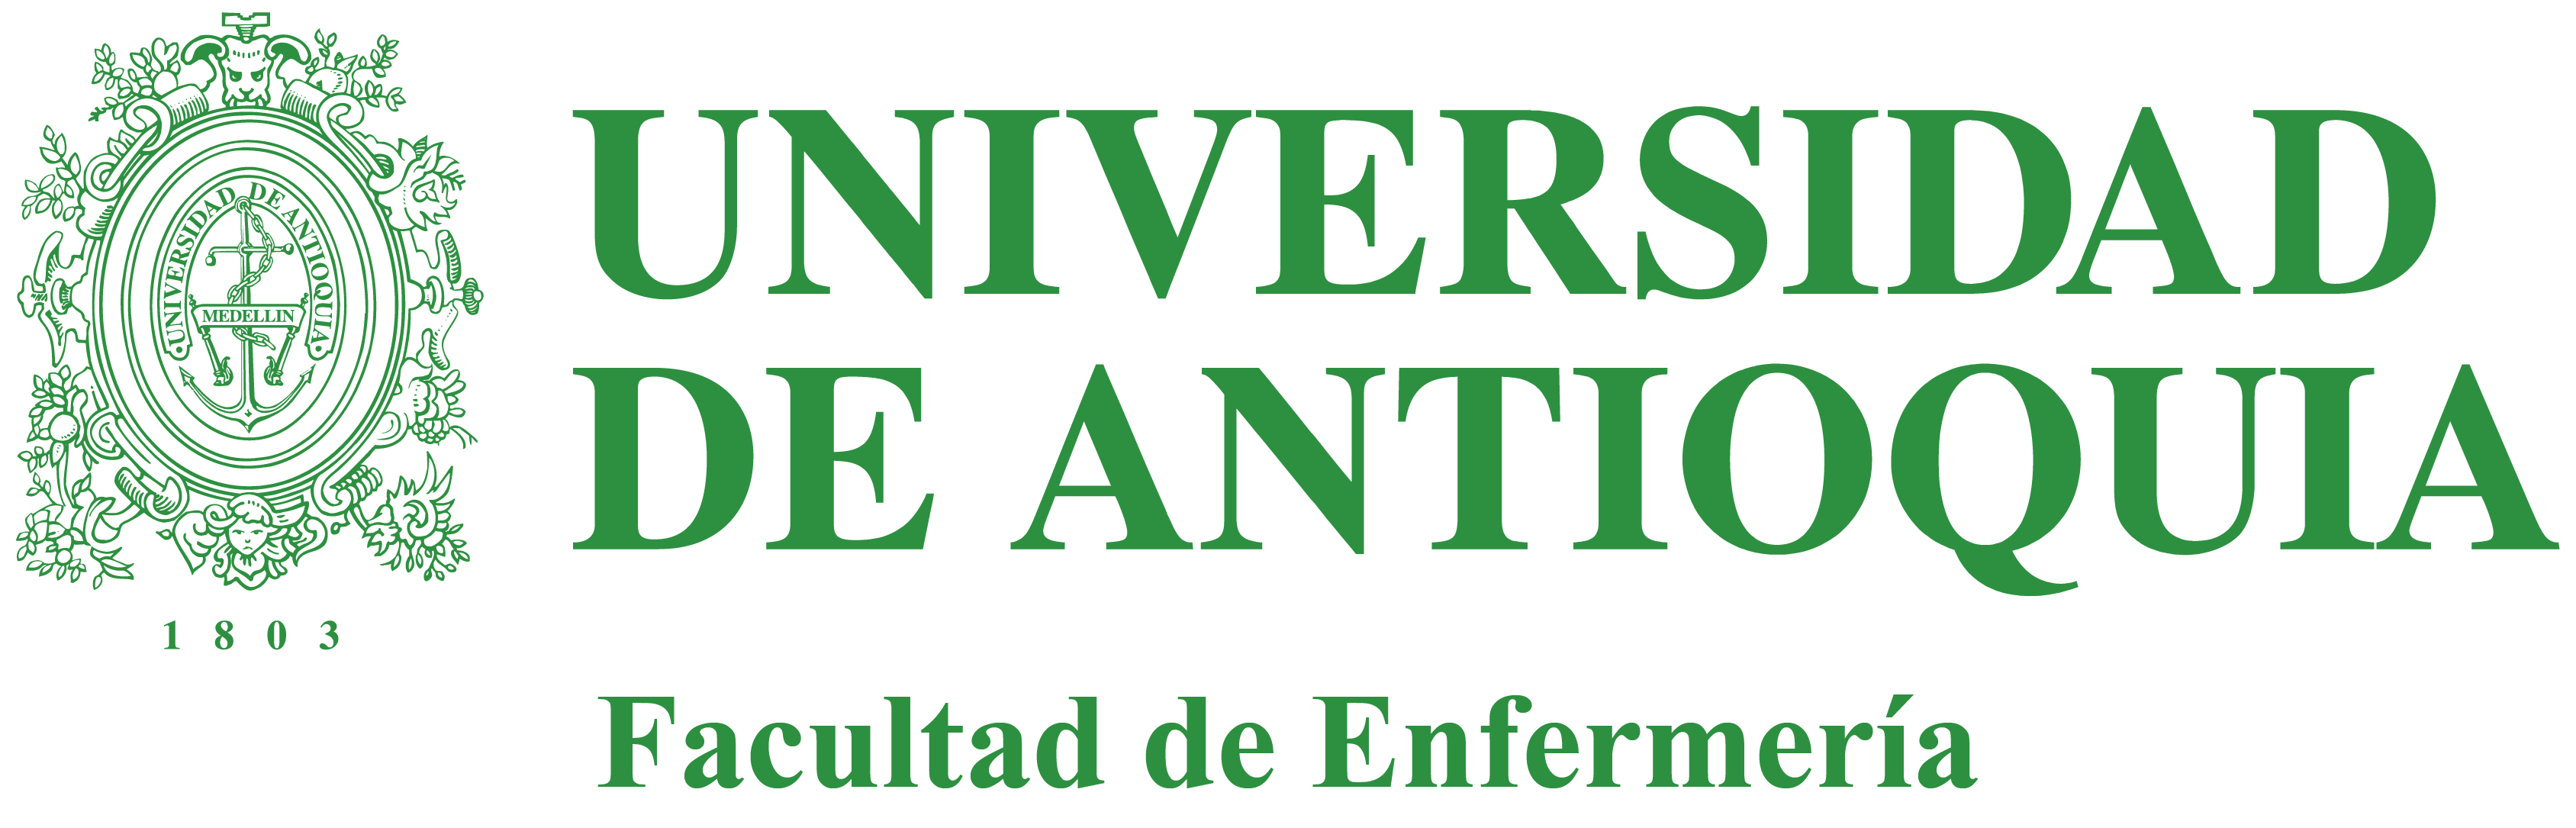 Logo Institucional color verde